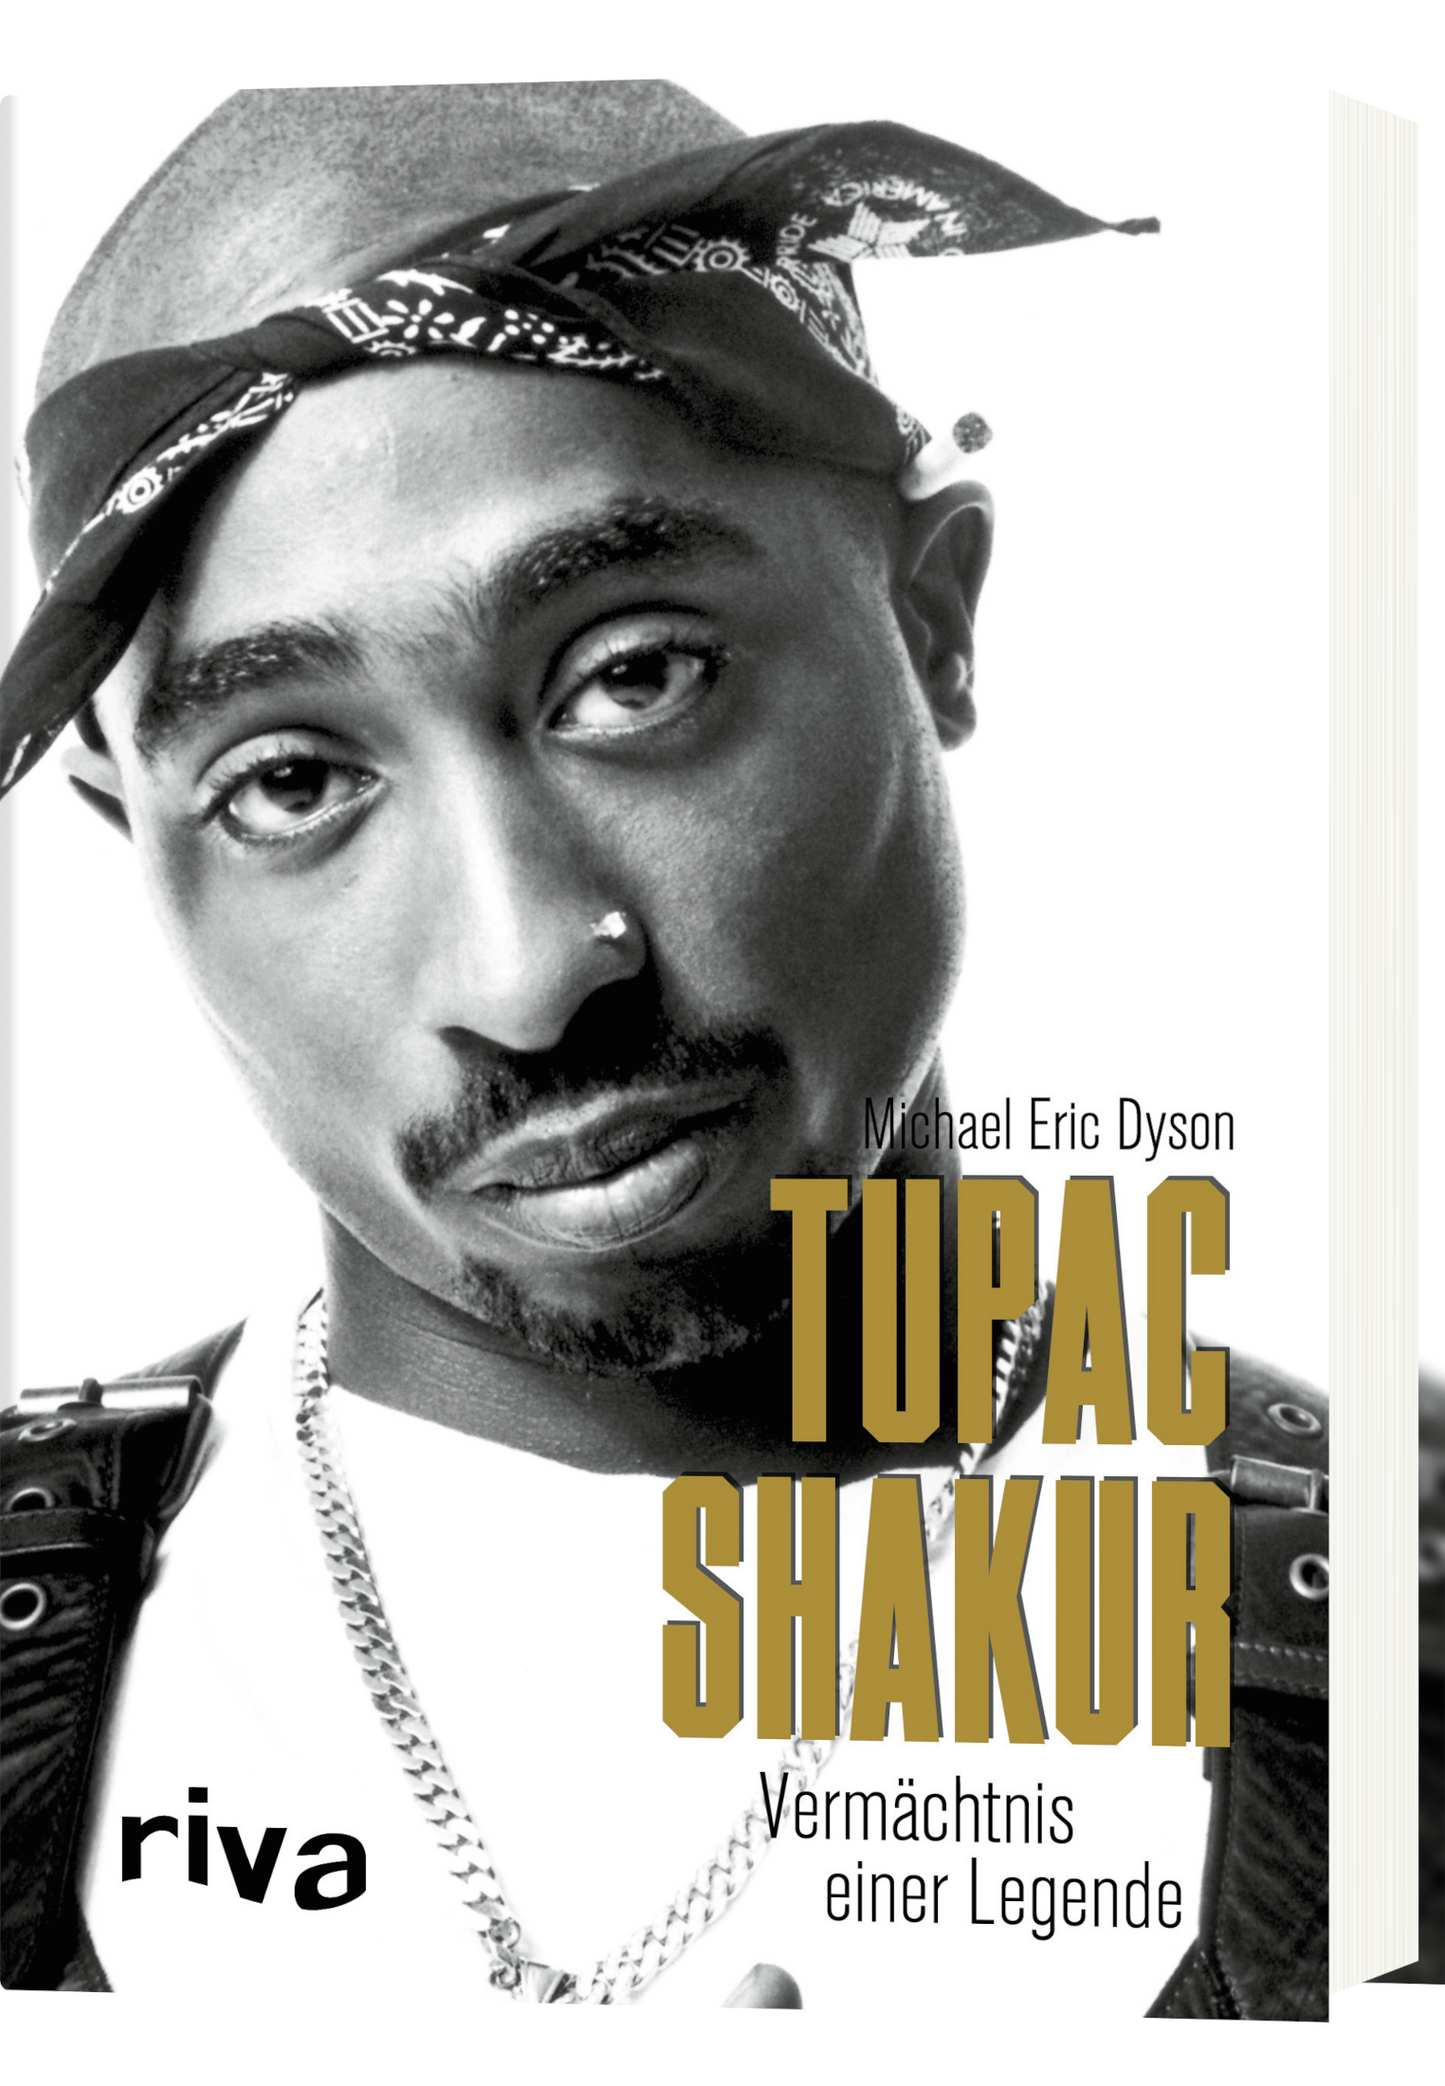 Tupac Shakur - Vermächtnis einer Legende im BAWRZ® One Stop Hip-Hop Shop